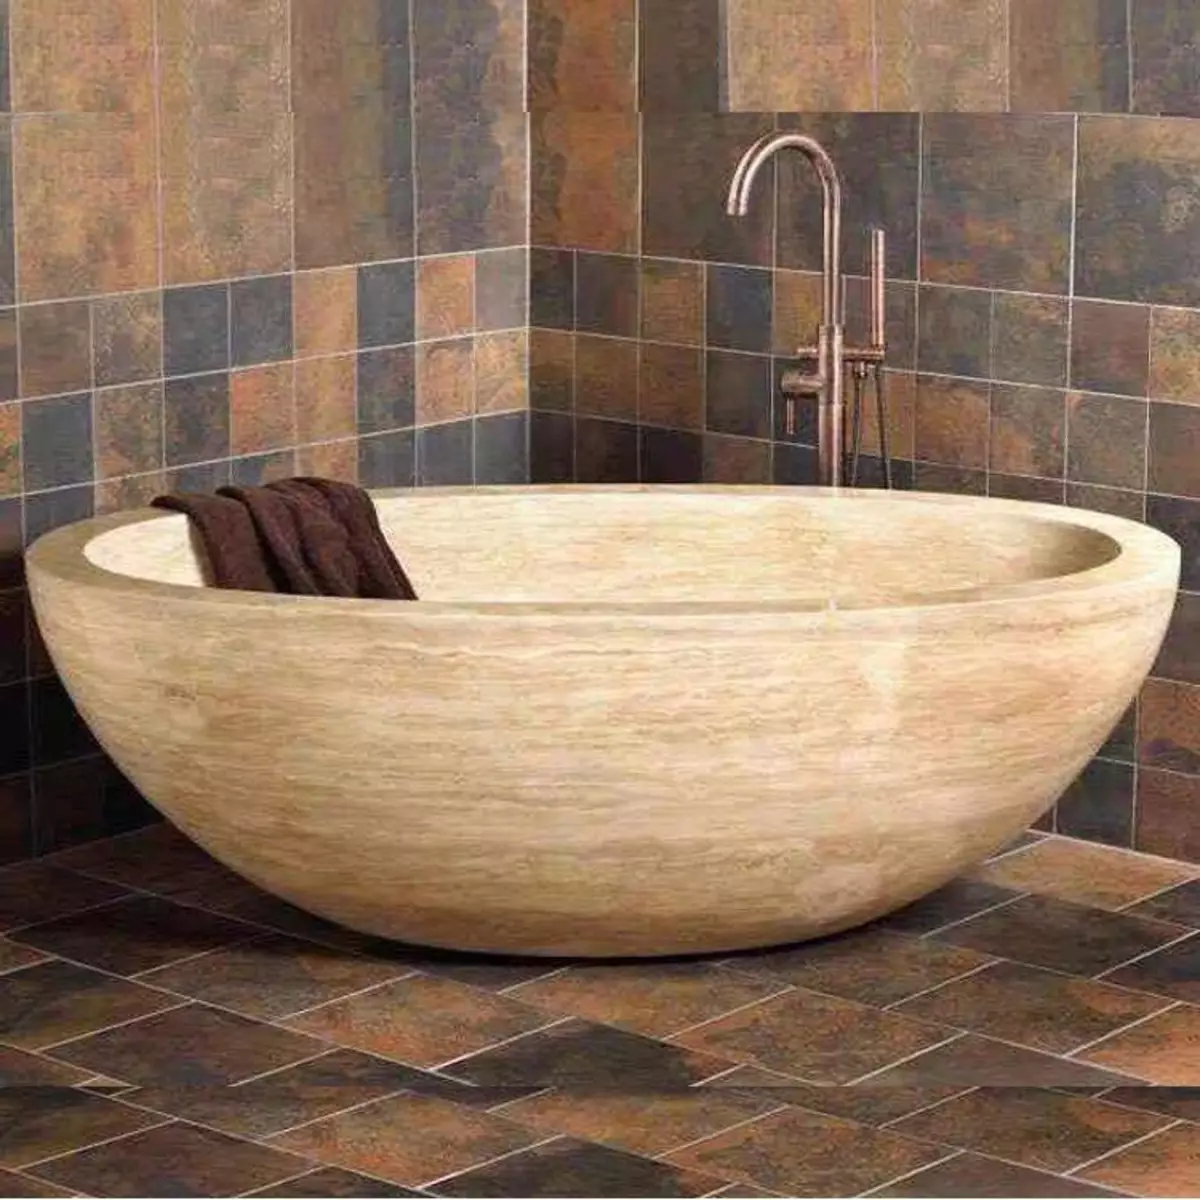 대리석 욕실 (98 장의 사진) : 방의 대리석 목욕탕, 욕실의 흰색 대리석과 나무의 조합, 인테리어의 예 10185_78